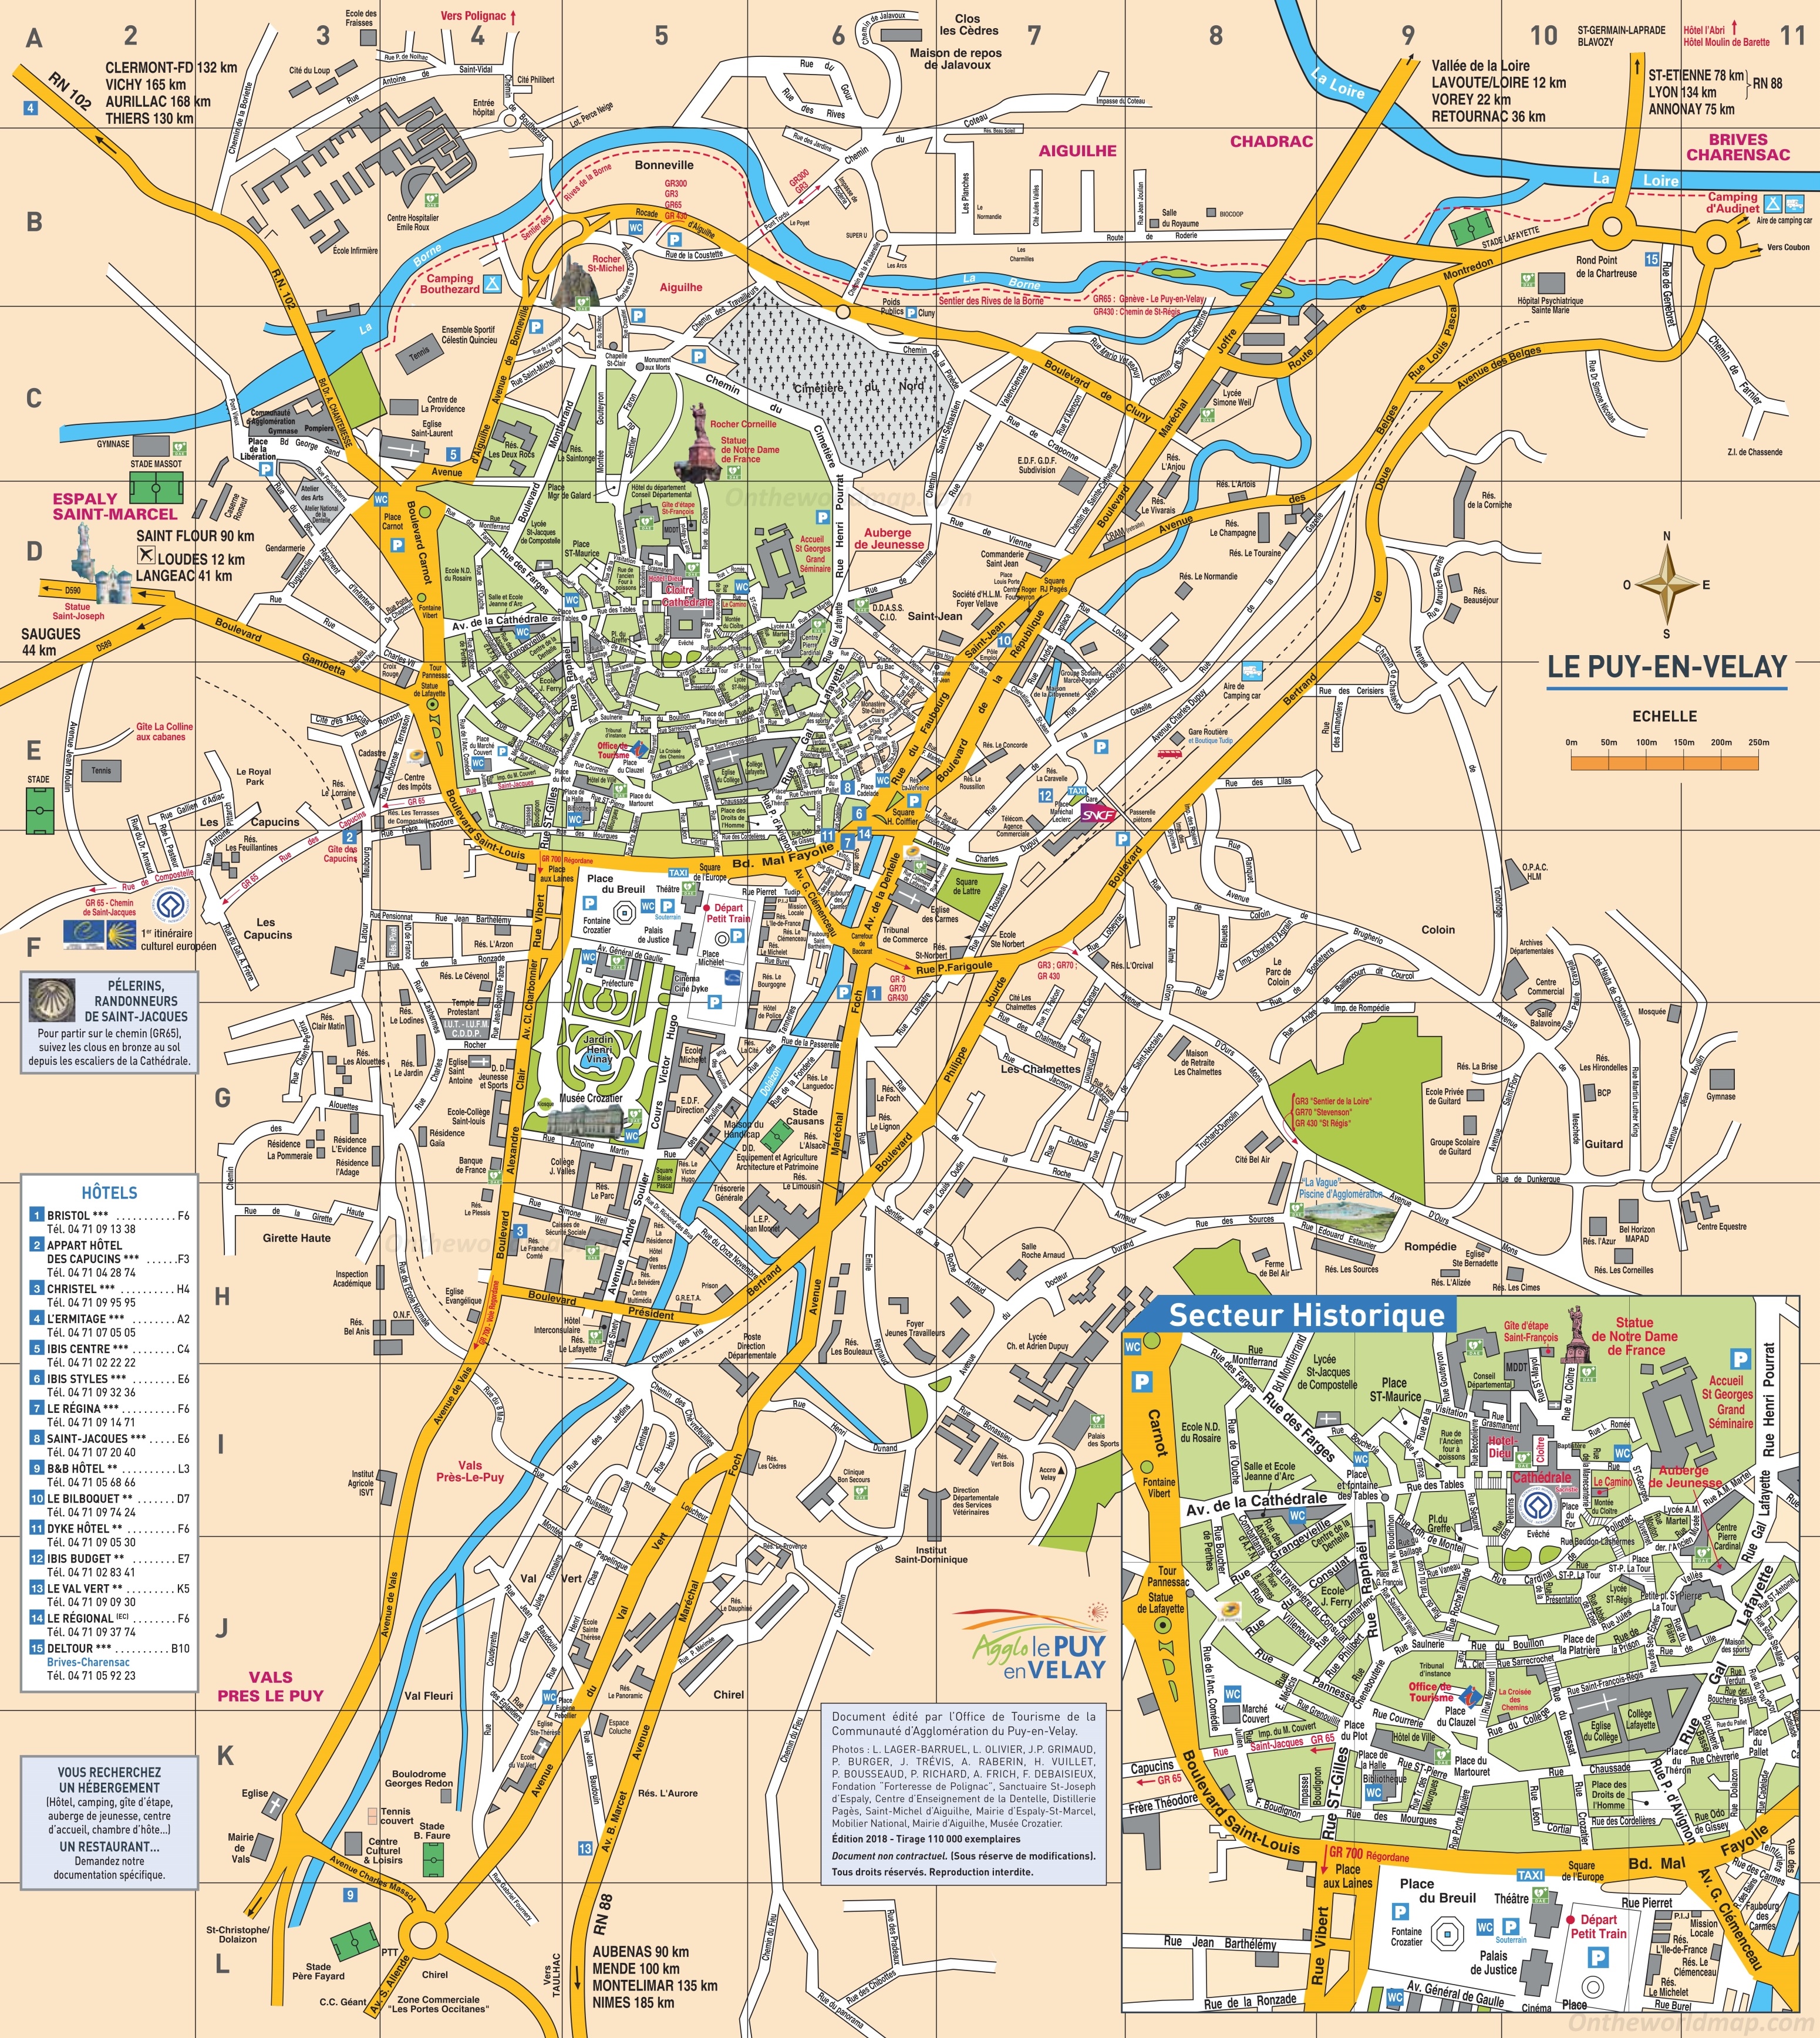 Le Puy-en-Velay Tourist Map